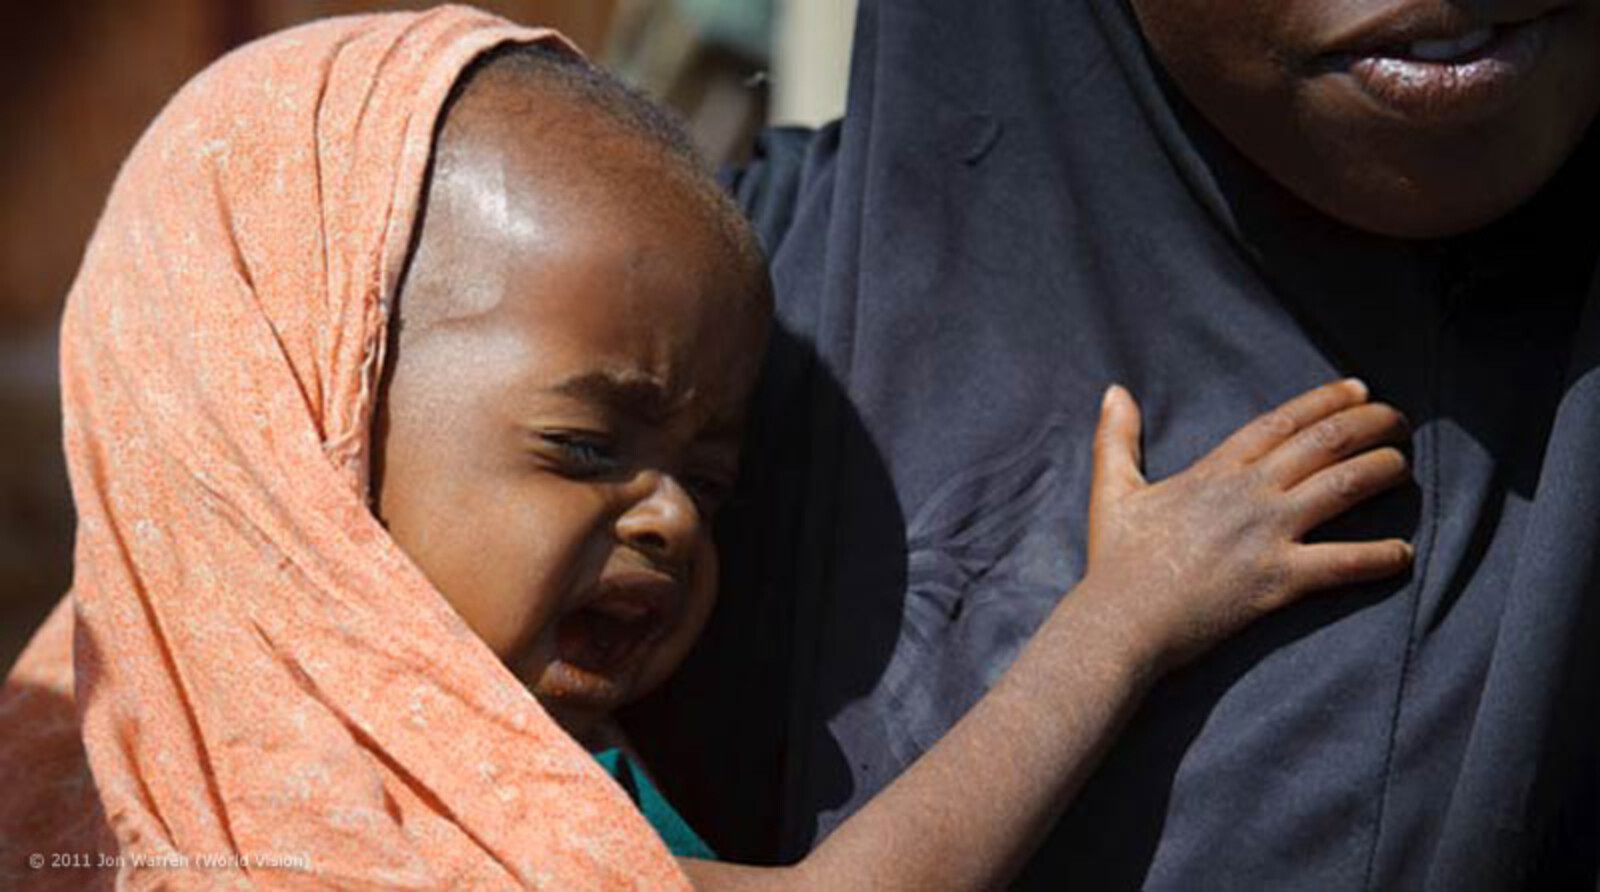 Das Muuse Rootile Camp besteht aus sechs kleineren Camps und liegt im Randgebiet von Garowe, Somalia. Hier bringen Mütter ihre Kinder hin, um Hilfe zu bekommen. Die Messung des Oberarmumfangs dieses Kindes bestätigt seine schwere Mangelernährung...